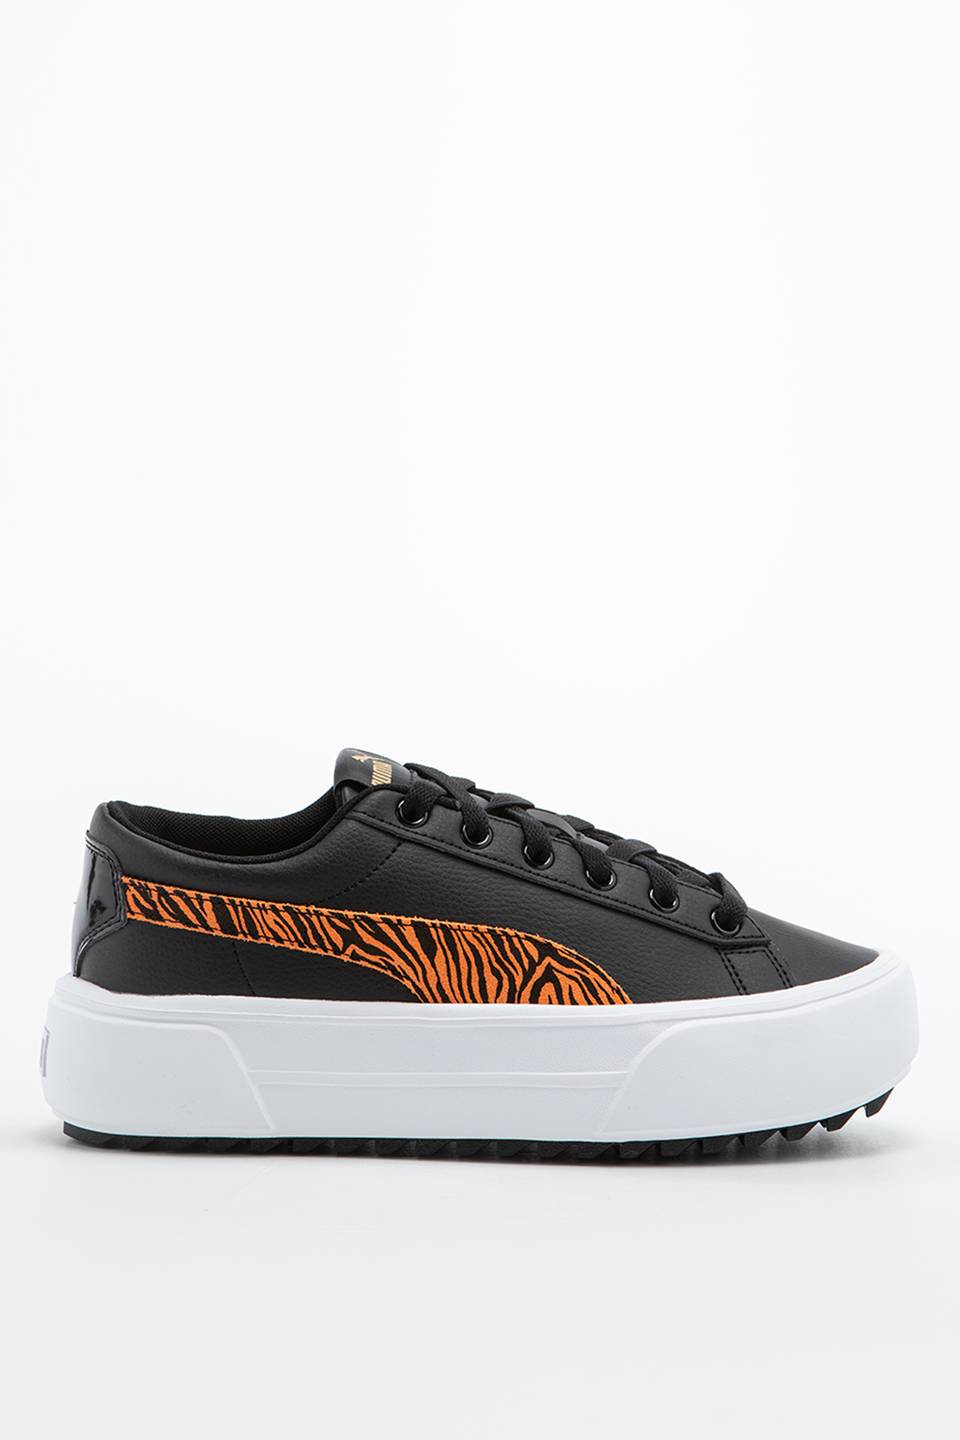 נעלי סניקרס פומה לנשים PUMA Kaia Platform Tiger - שחור/כתום